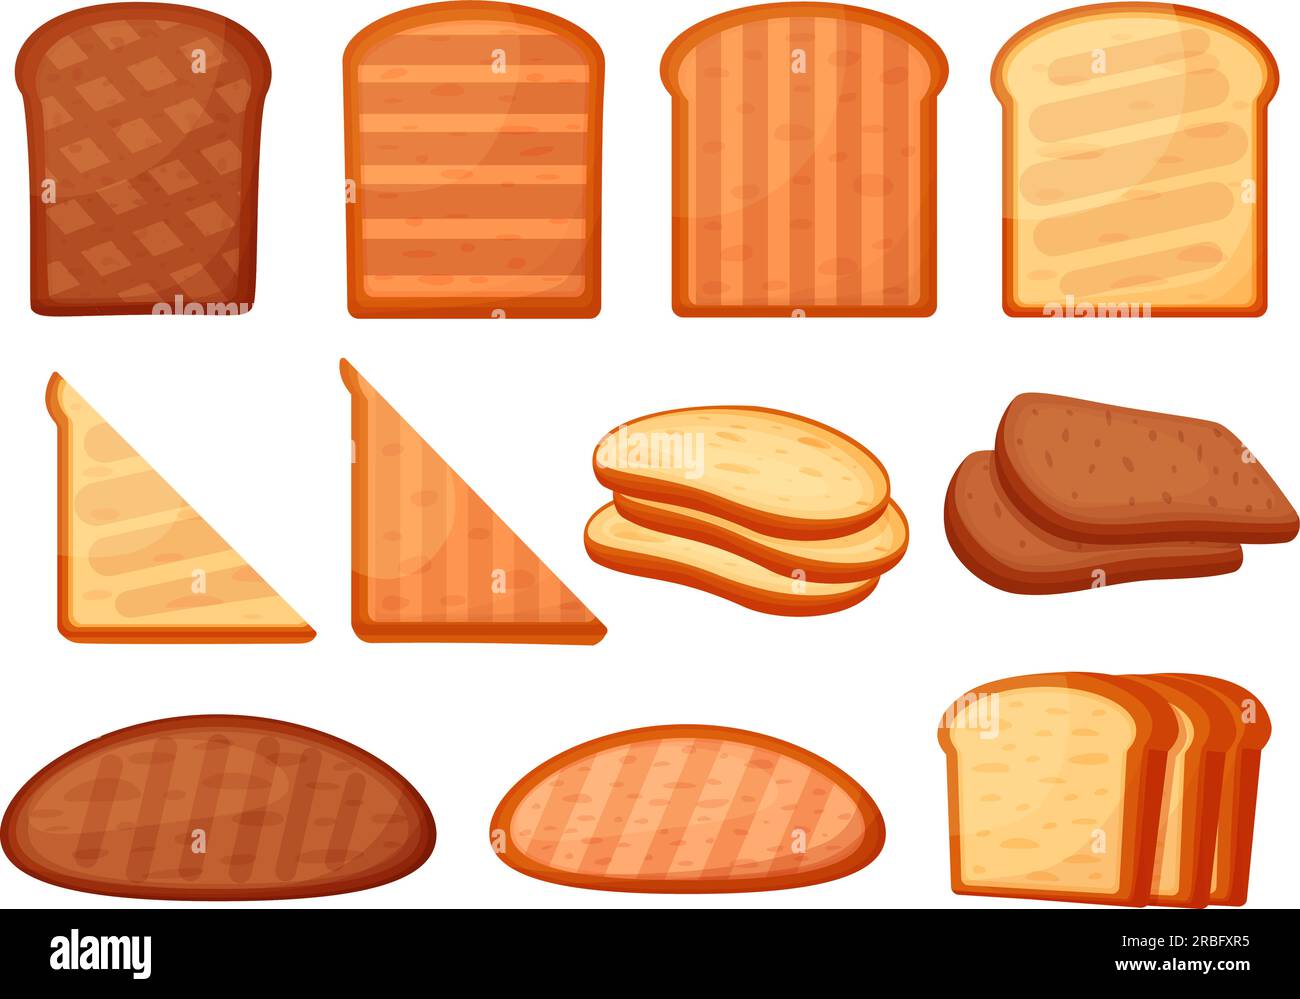 Toast, pane tostato, elementi cartoni animati. Fette di pane tostate,  ingredienti freschi isolati. Snack salutistico per il pranzo o la  colazione, oggi Immagine e Vettoriale - Alamy